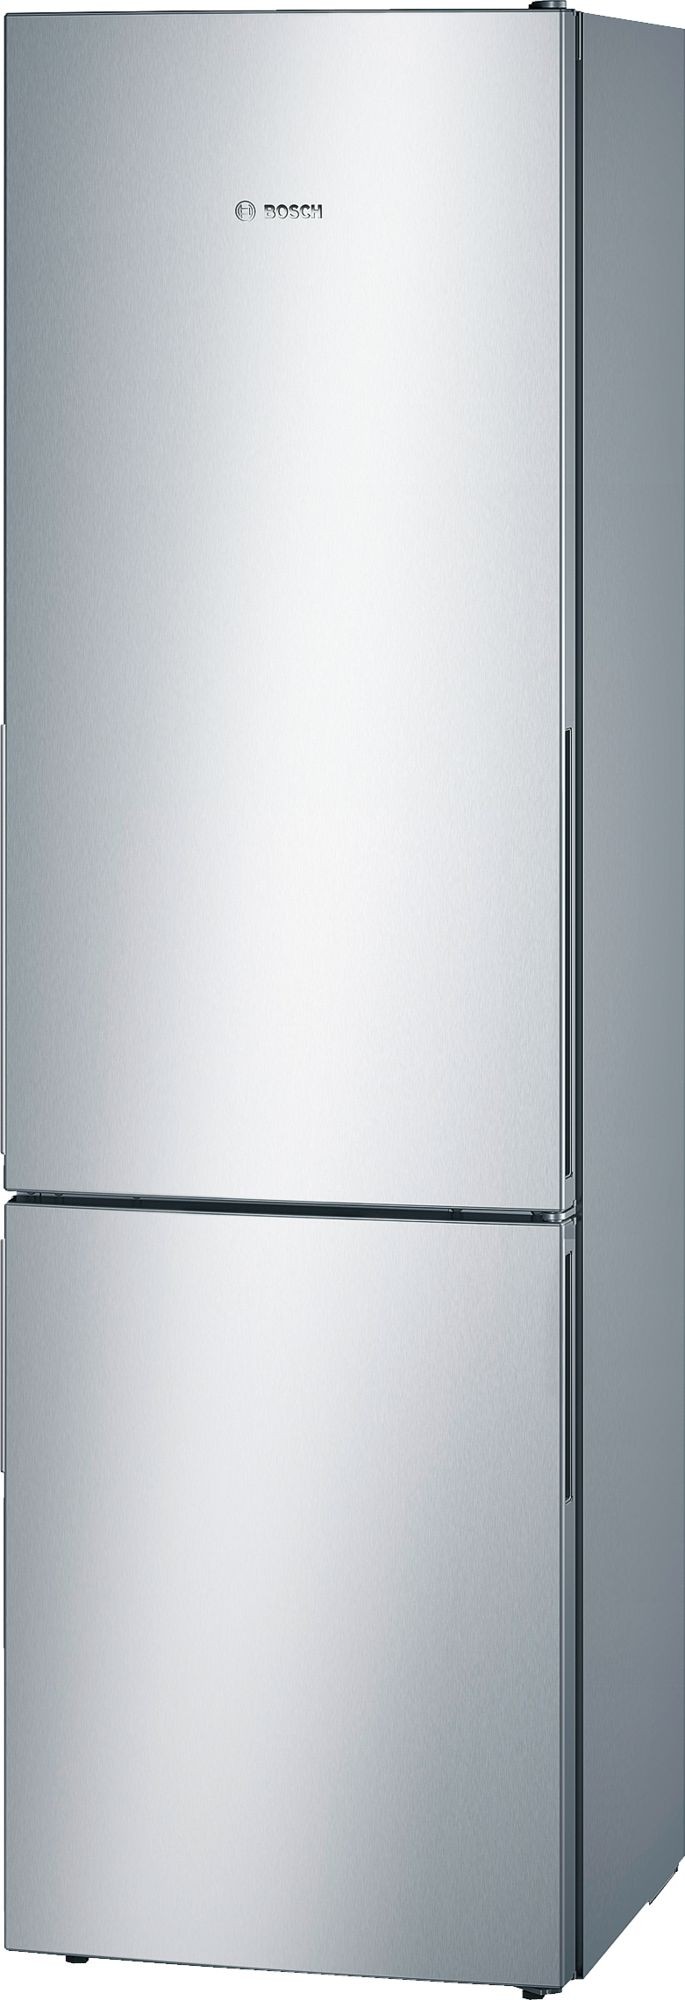 Bosch hűtőszekrény használati utasítás